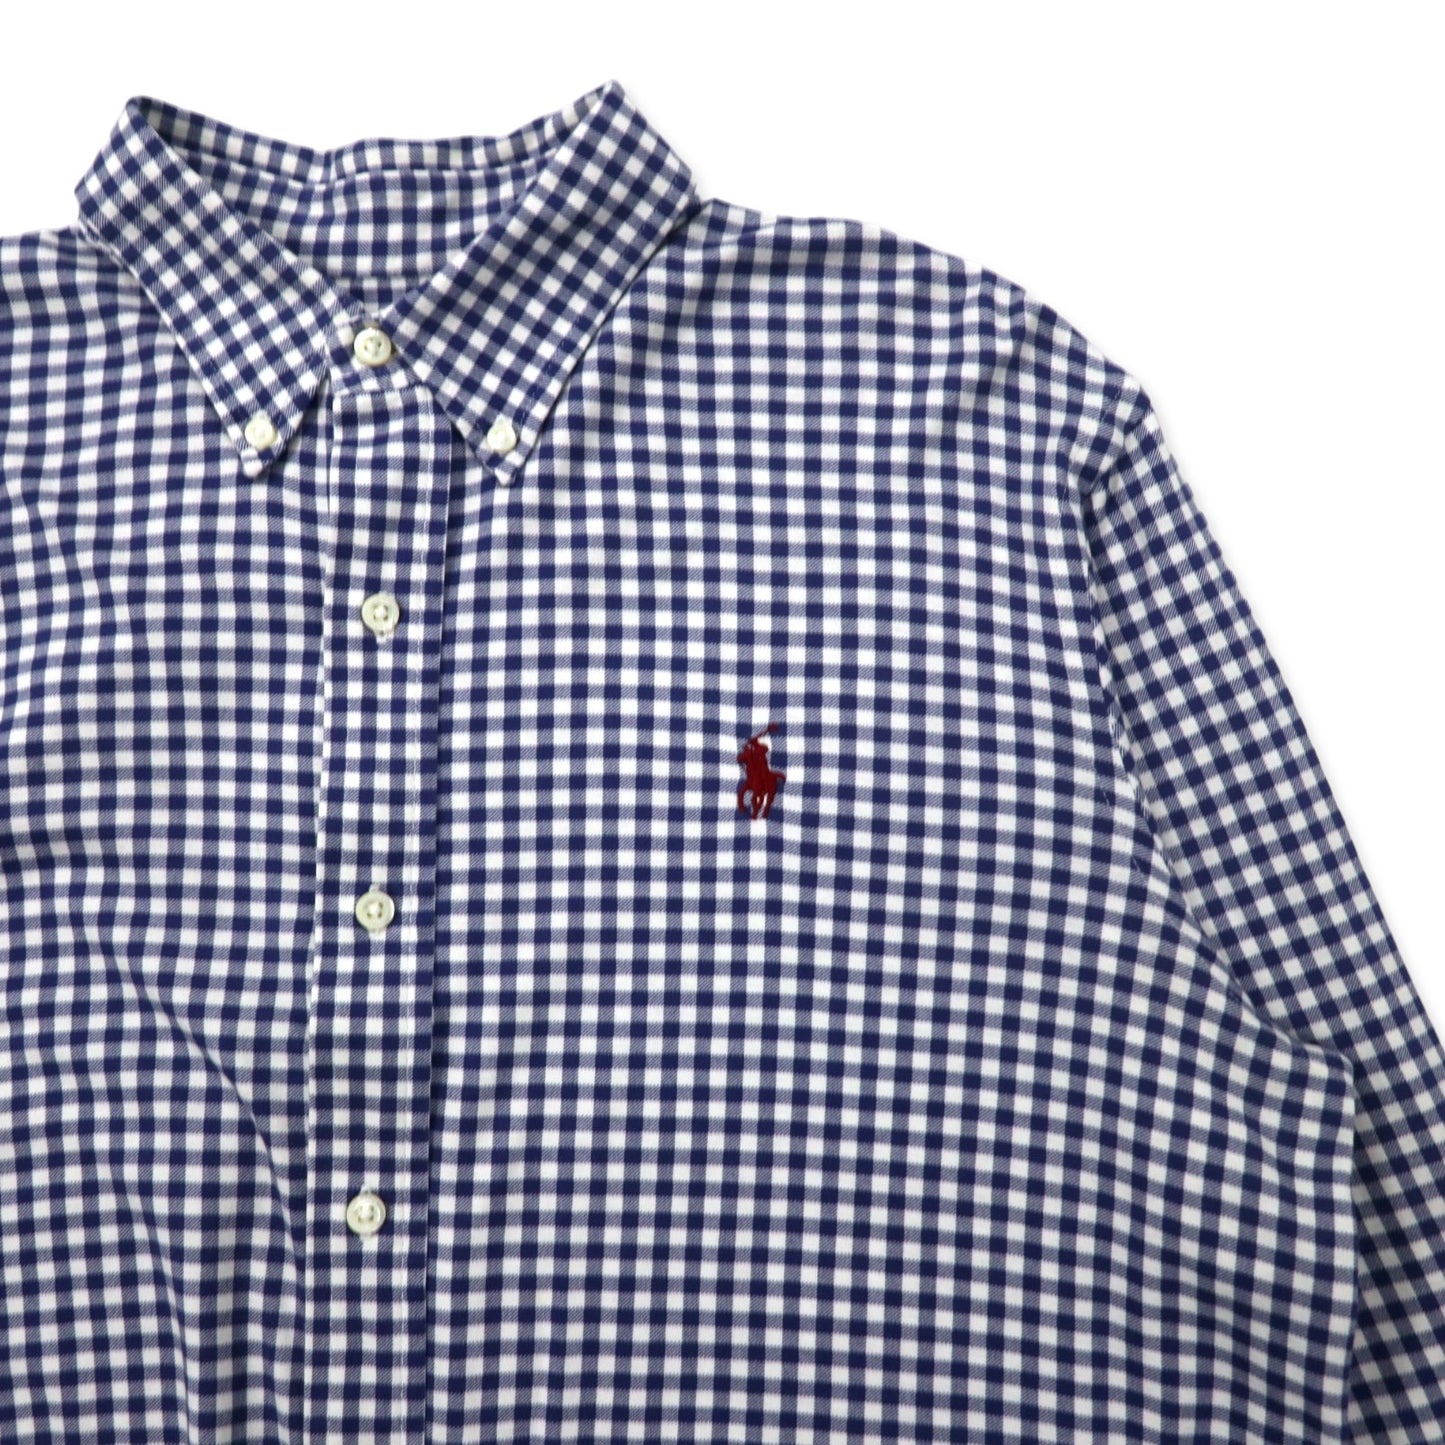 RALPH LAUREN ボタンダウンシャツ L ブルー ギンガムチェック ピマコットン ストレッチ KNIT DRESS SHIRT スモールポニー刺繍